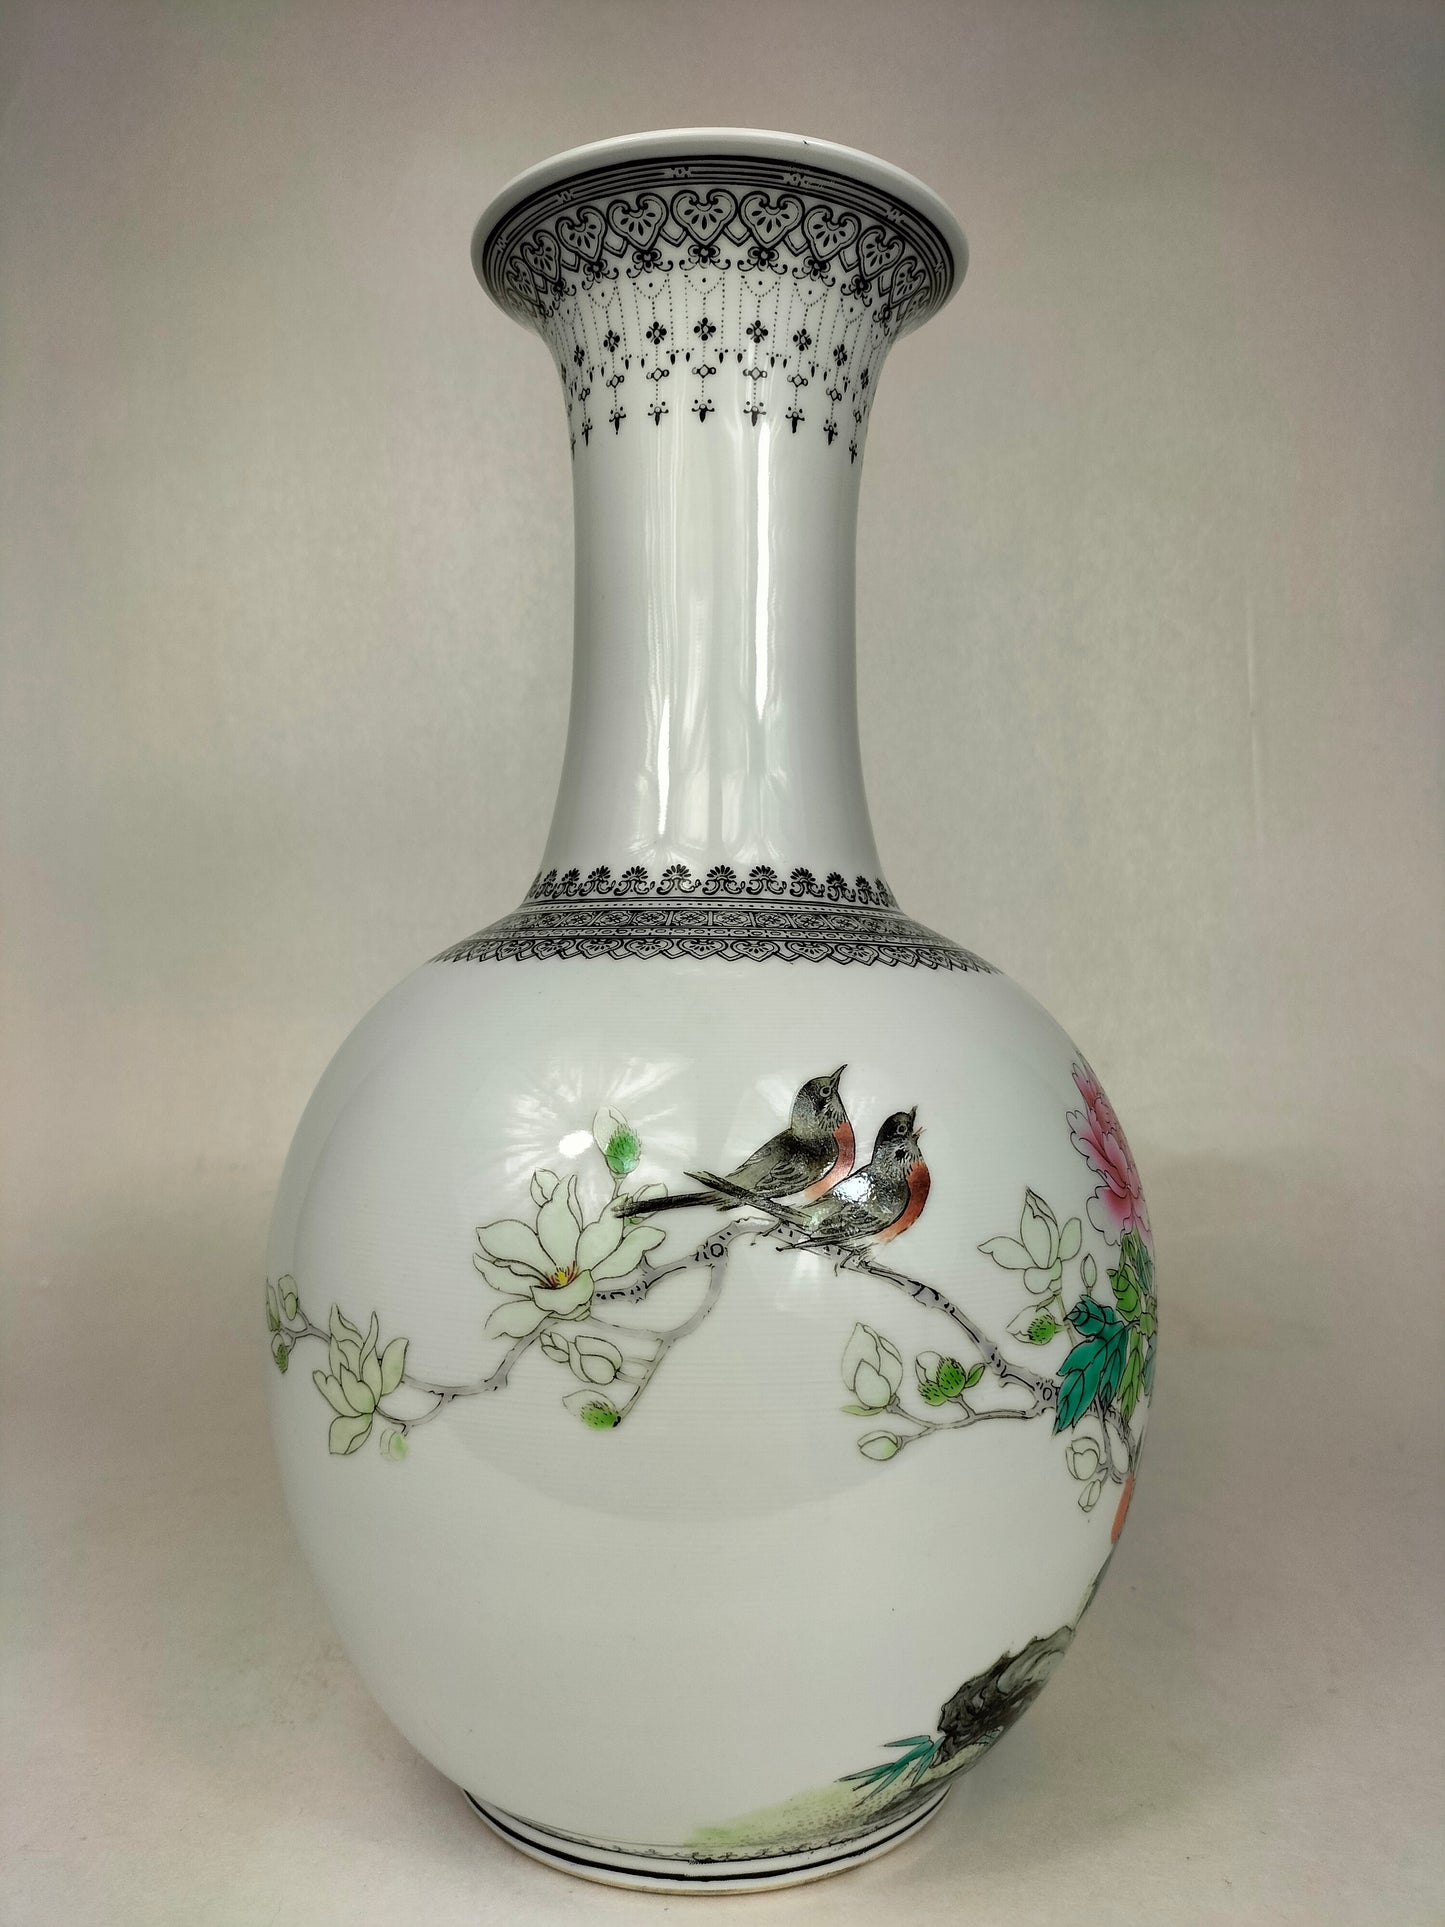 Bình hoa cổ điển Trung Quốc được trang trí bằng hoa // Jingdezhen - thế kỷ 20